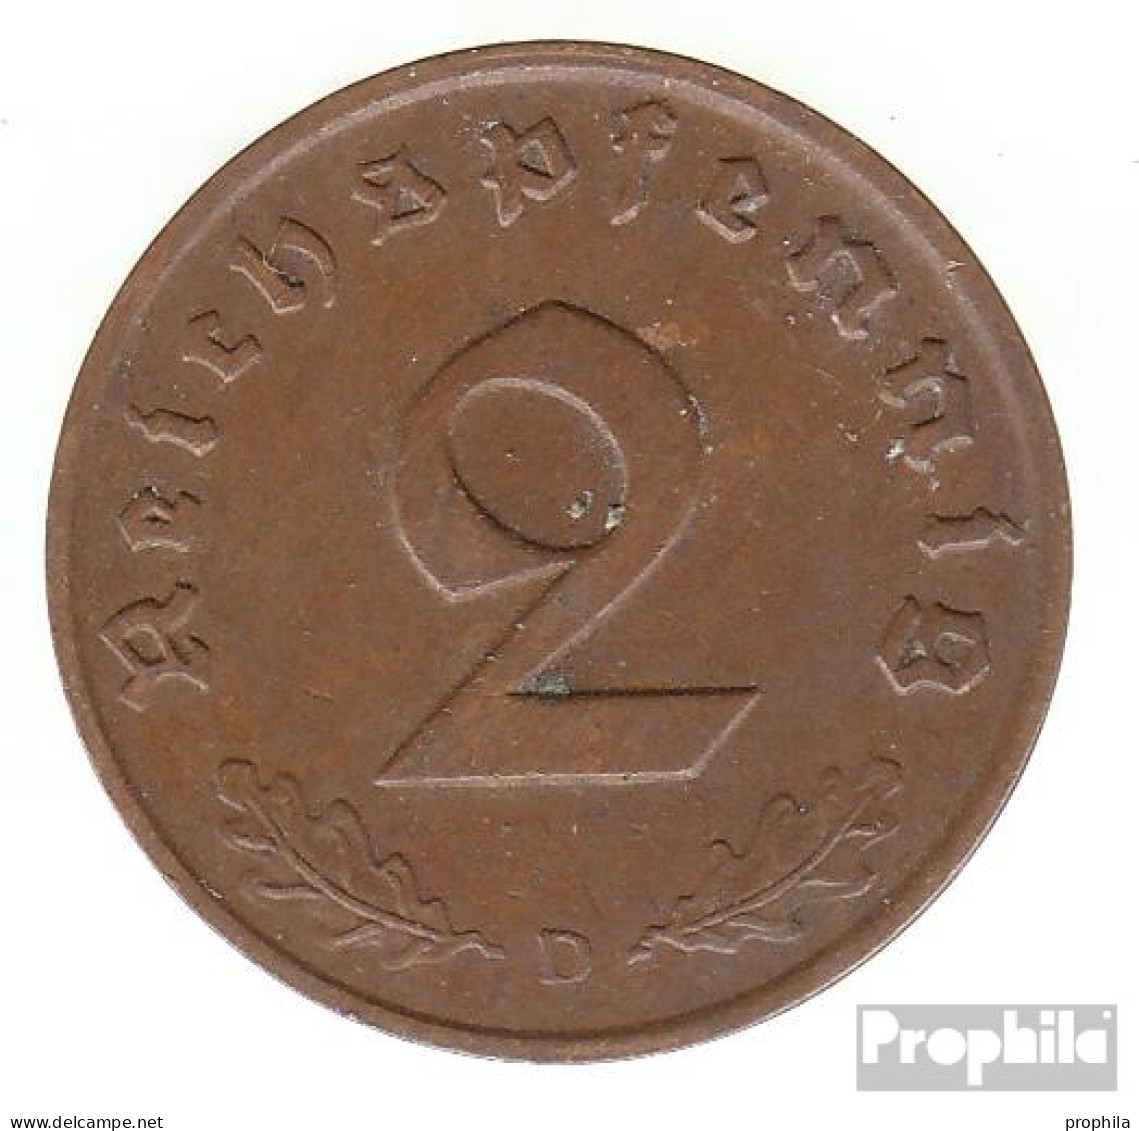 Deutsches Reich Jägernr: 362 1938 A Vorzüglich Bronze Vorzüglich 1938 2 Reichspfennig Reichsadler - 2 Reichspfennig